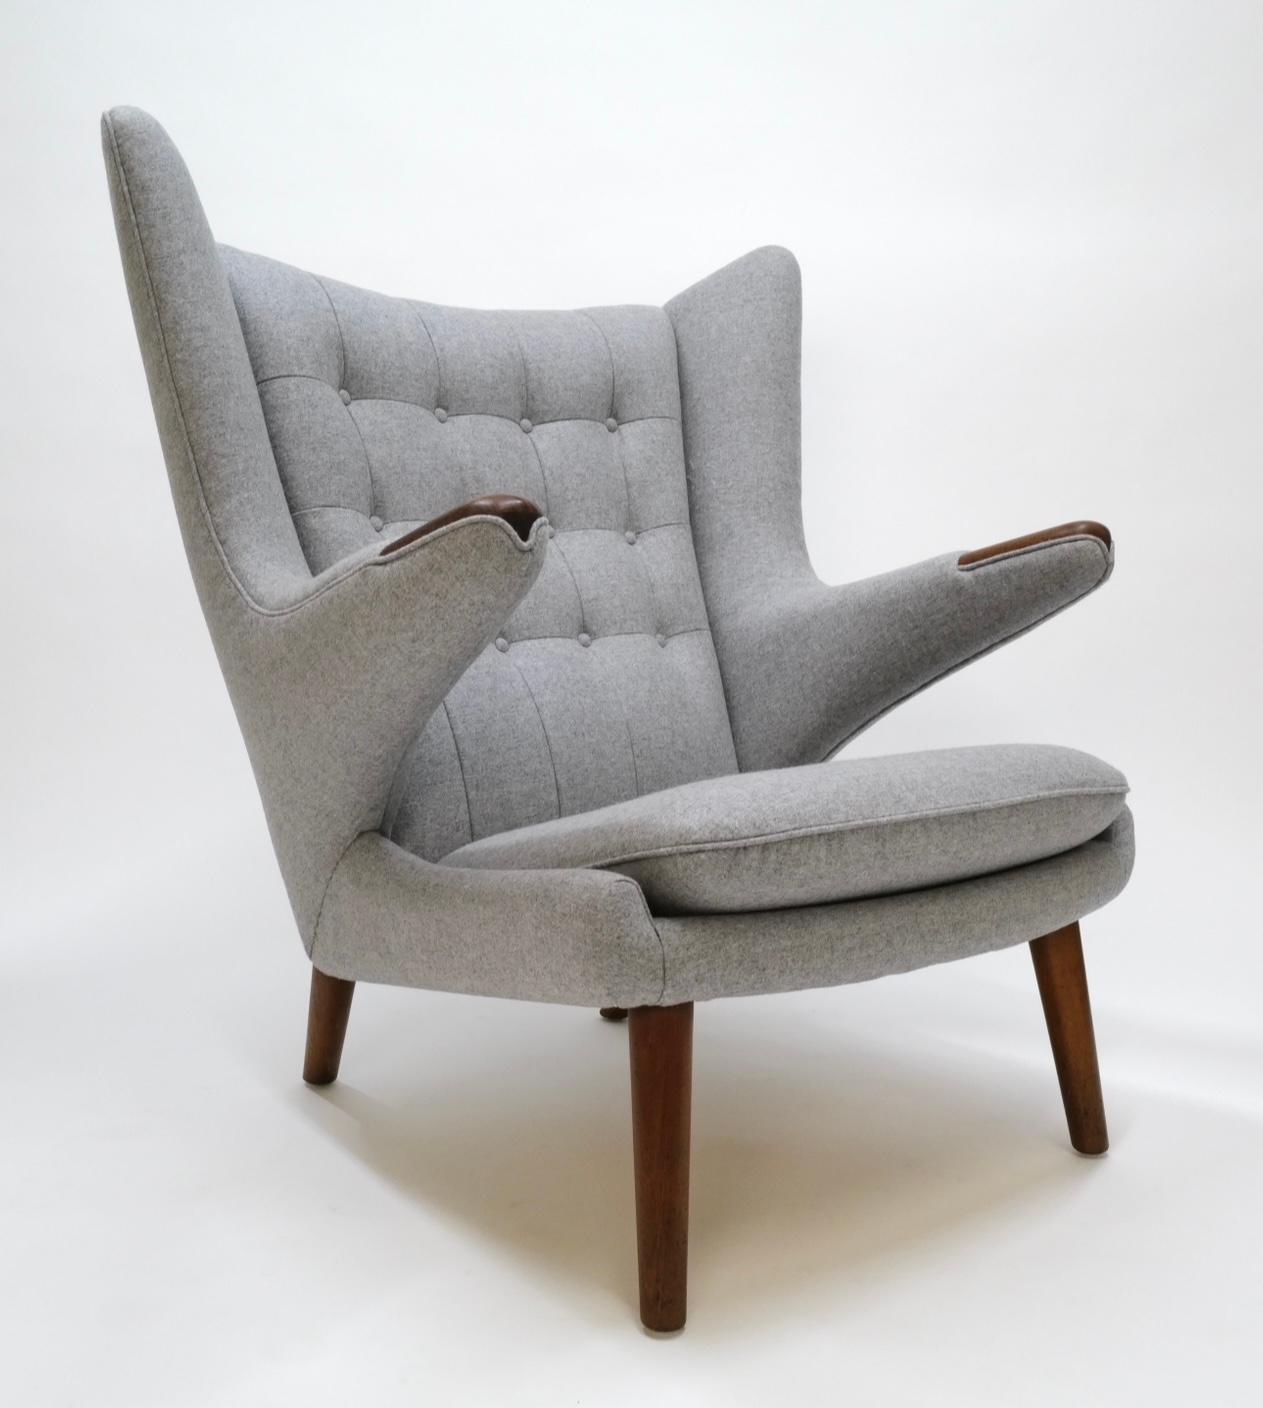 La chaise Papa Bear, un design classique de Hans Wagner, affiche une élégance intemporelle avec sa silhouette emblématique de la modernité du milieu du siècle. Cette pièce particulière a été méticuleusement retapissée par des professionnels